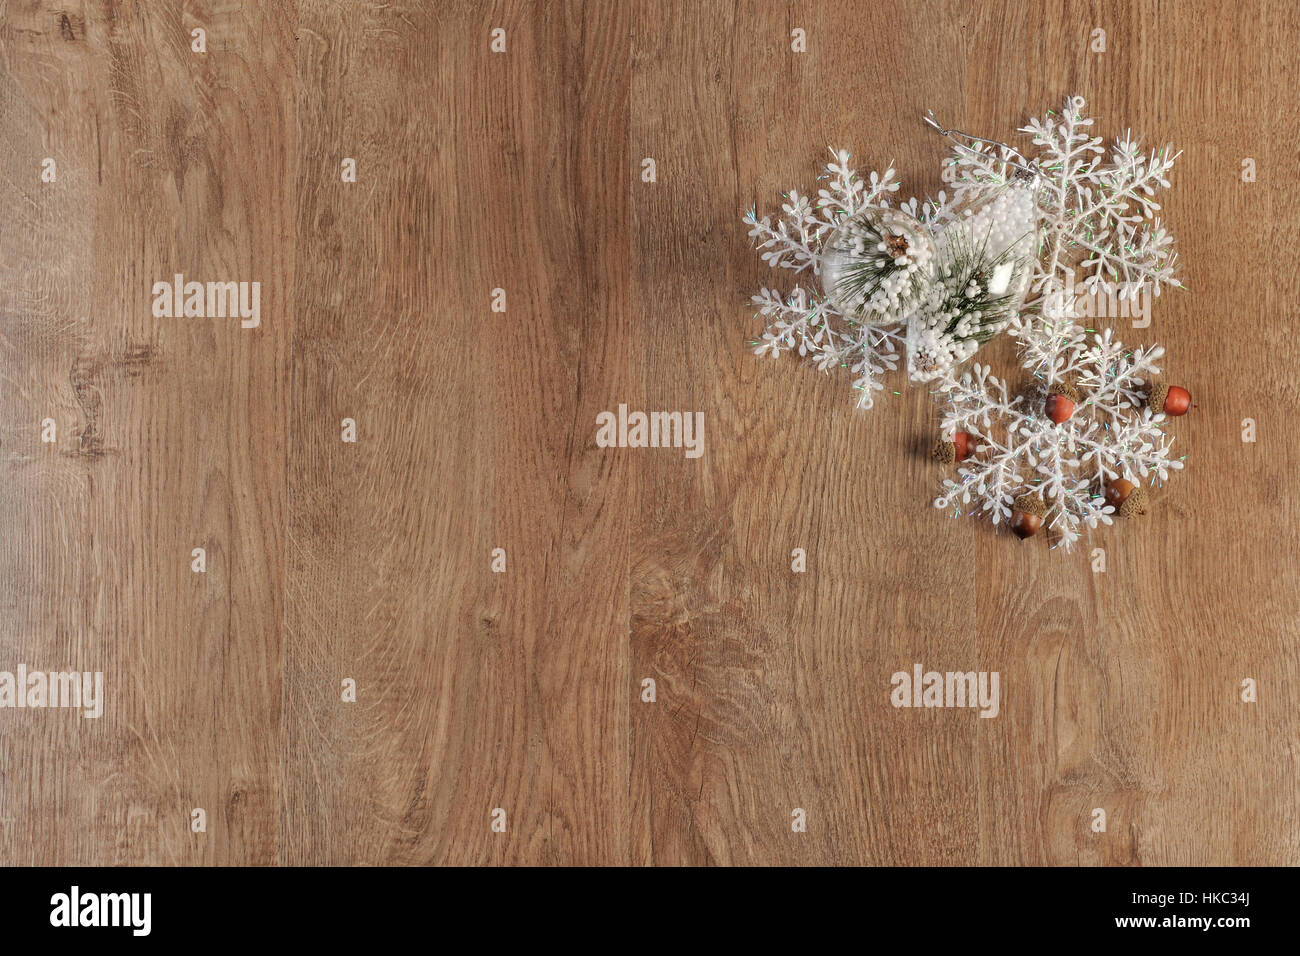 Weihnachtsdekoration Kugeln auf Holzboden Stockfoto